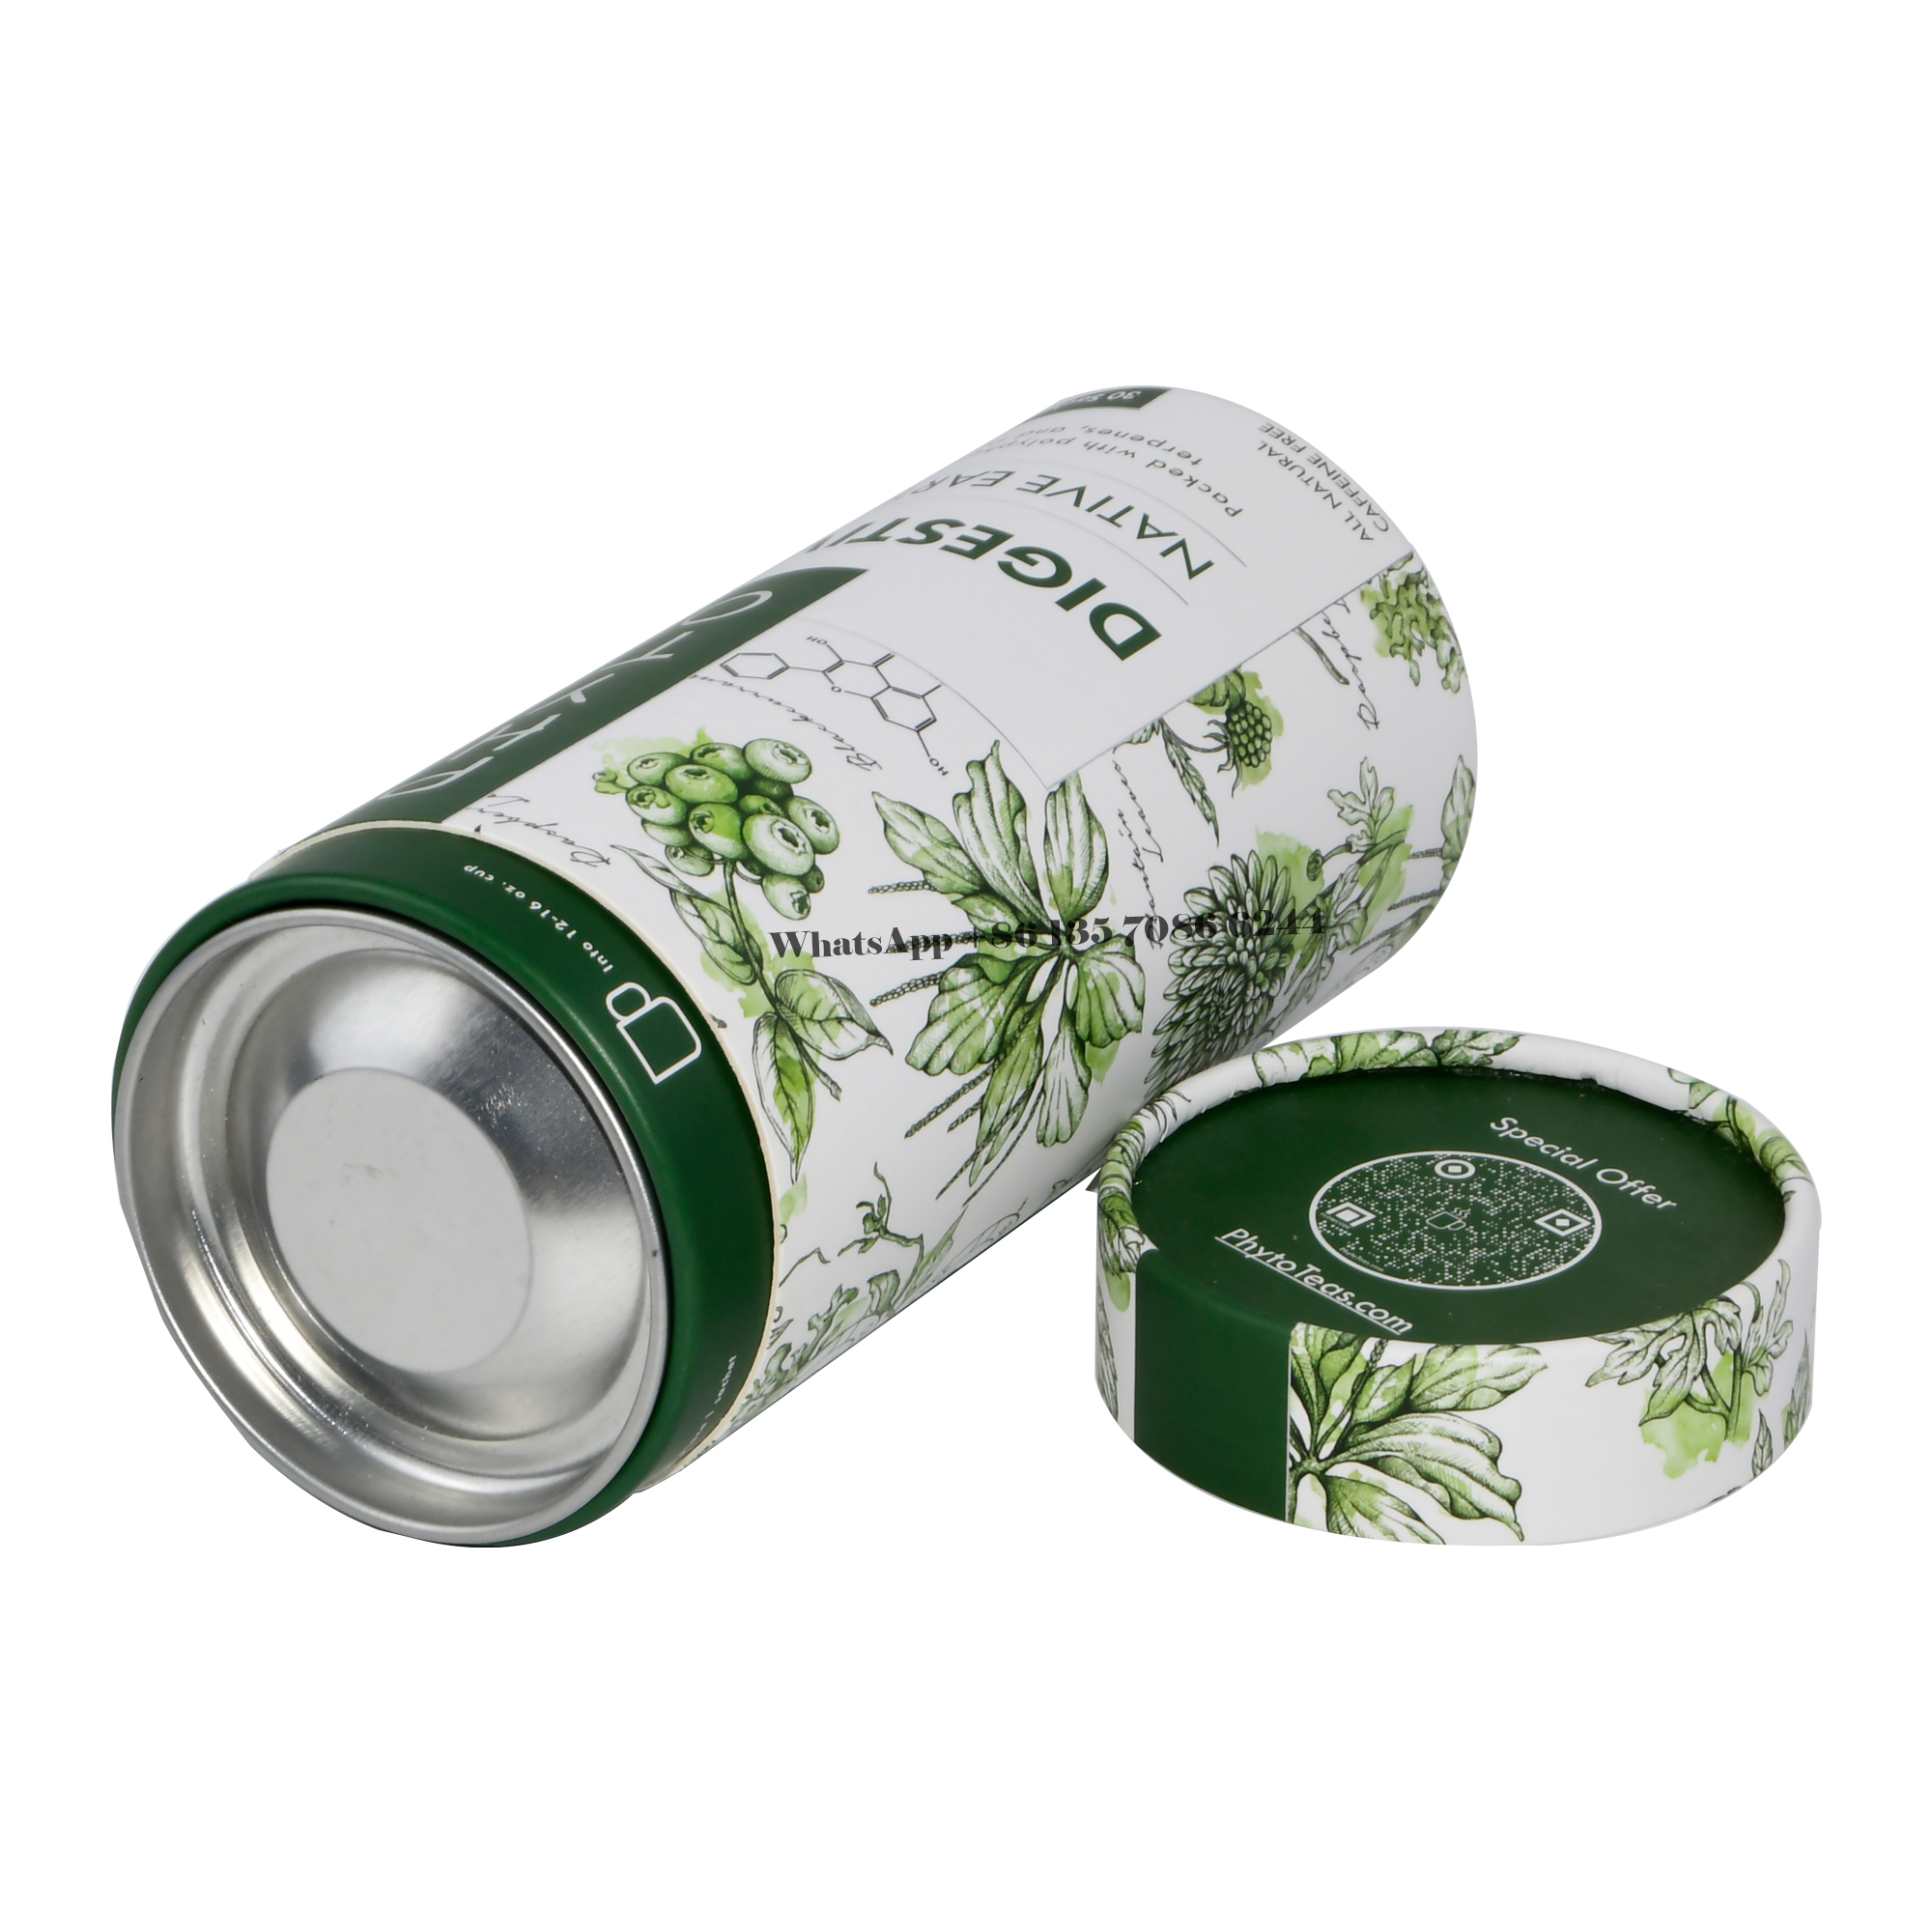  Embalagem redonda em tubo de papel para um chá blend requintado e elegante  